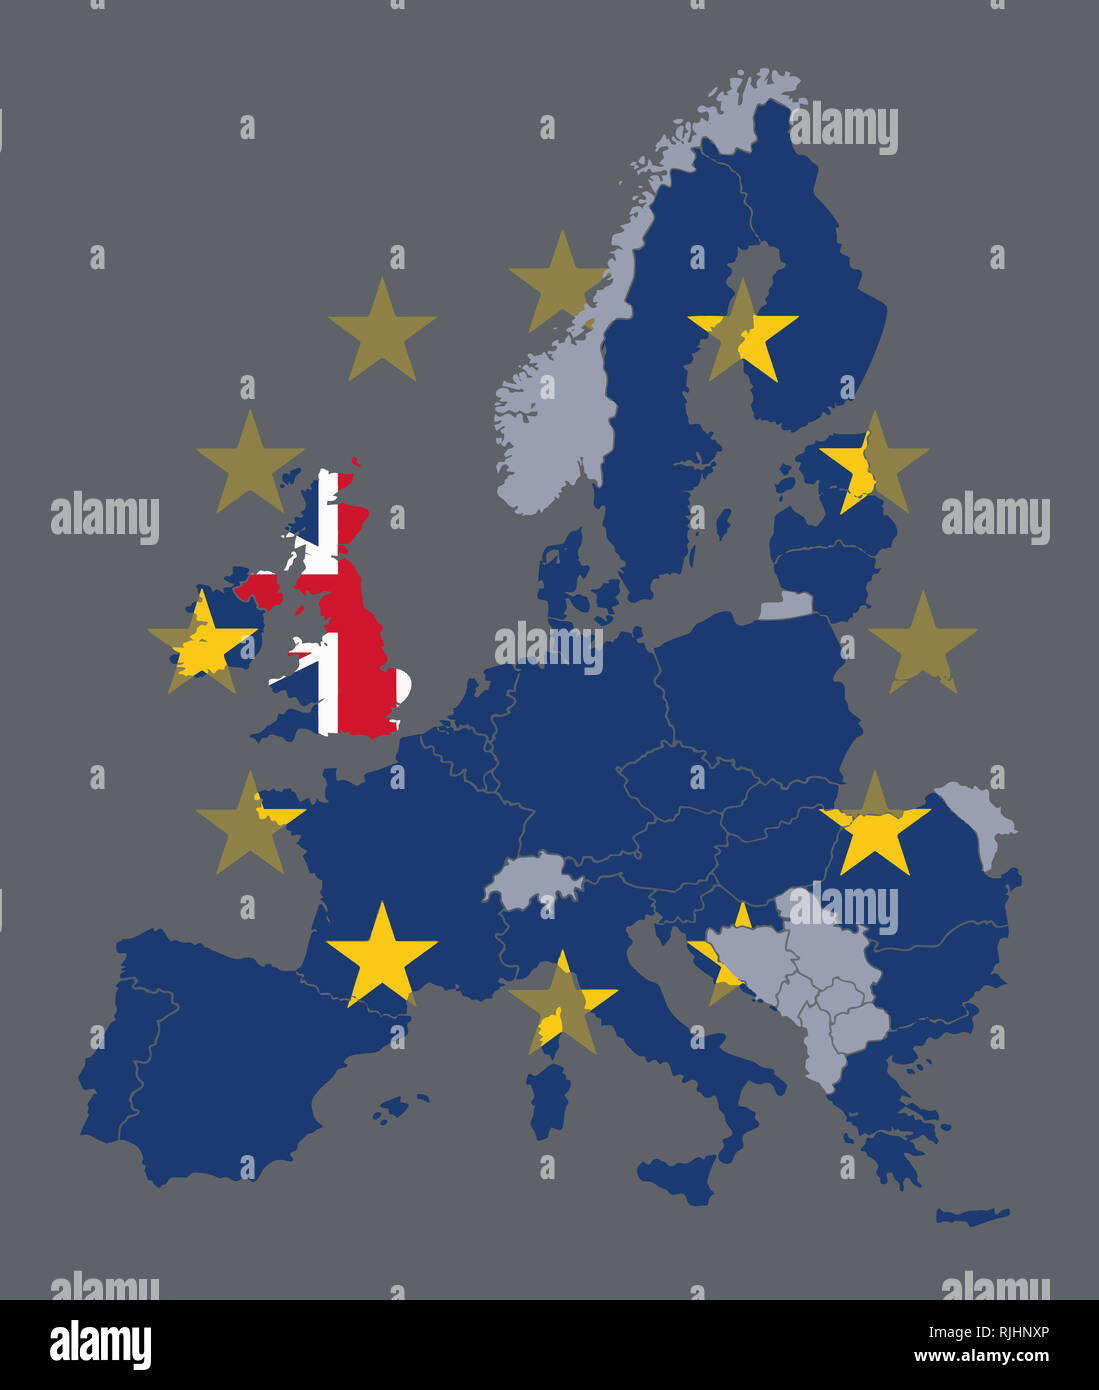 Carte des états membres de l'UE avec drapeau de l'Union européenne et le Royaume-Uni l'objet avec pavillon britannique au cours de processus Brexit Banque D'Images